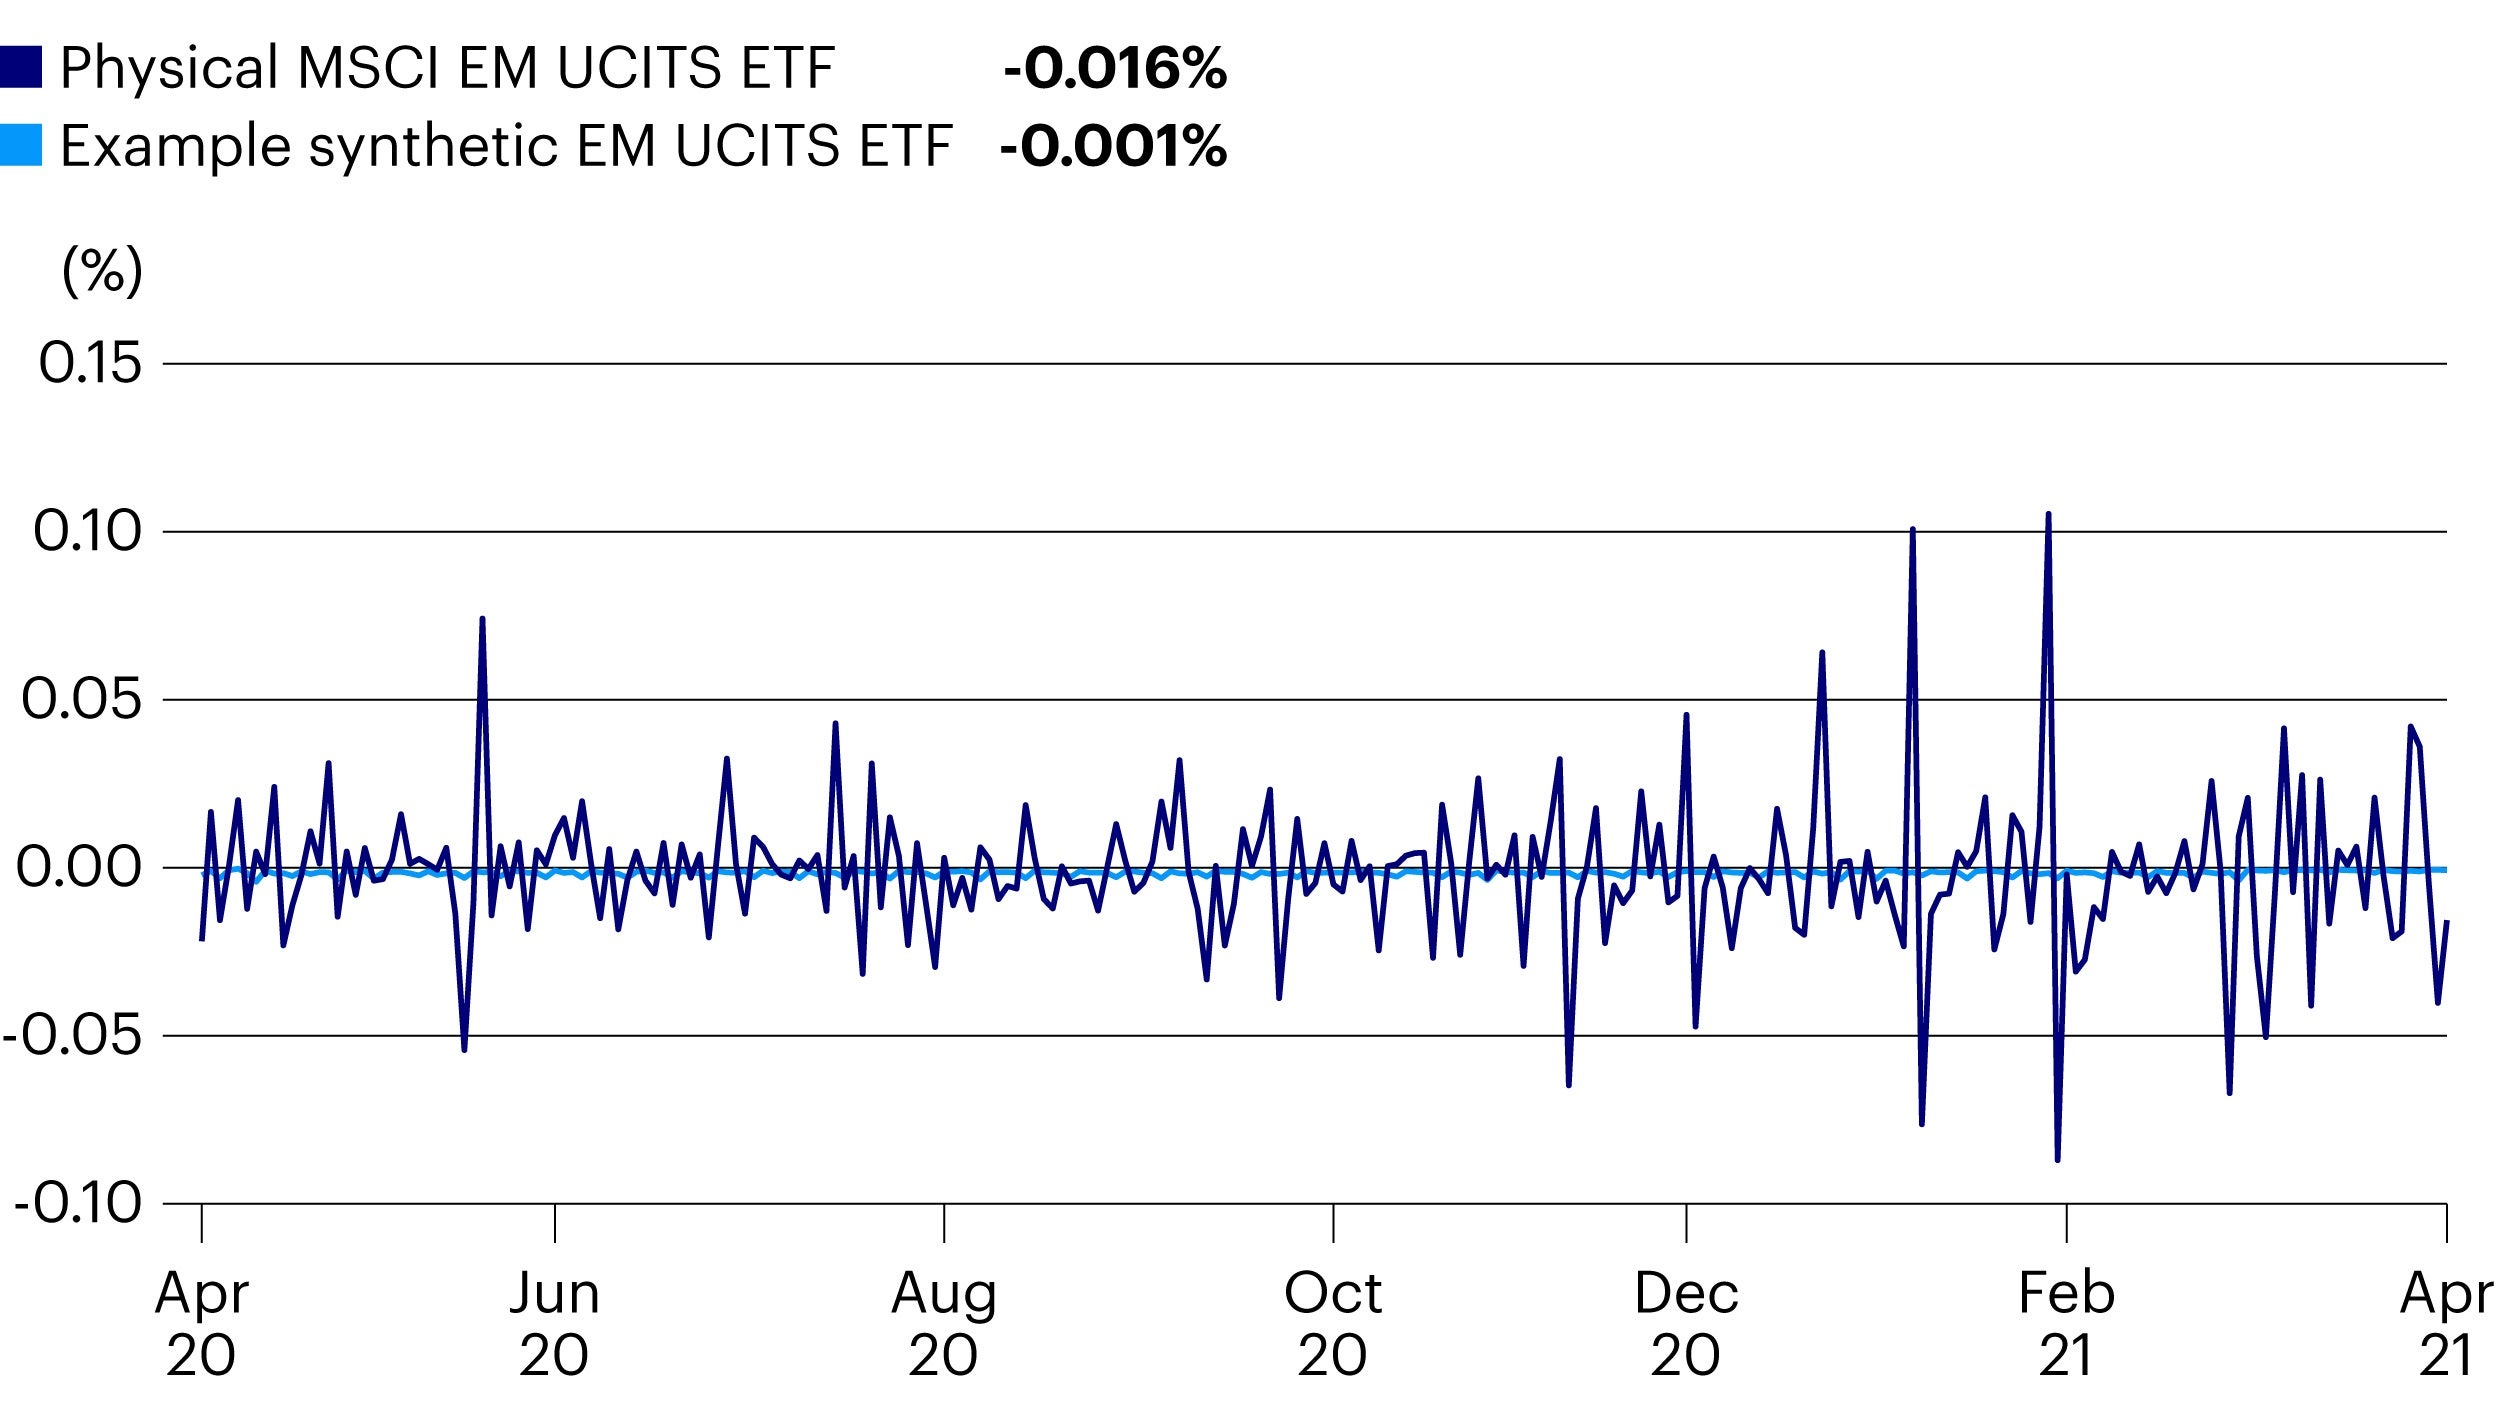 Tracking error: Largest physical EM UCITS ETF vs. example synthetic EM UCITS ETF